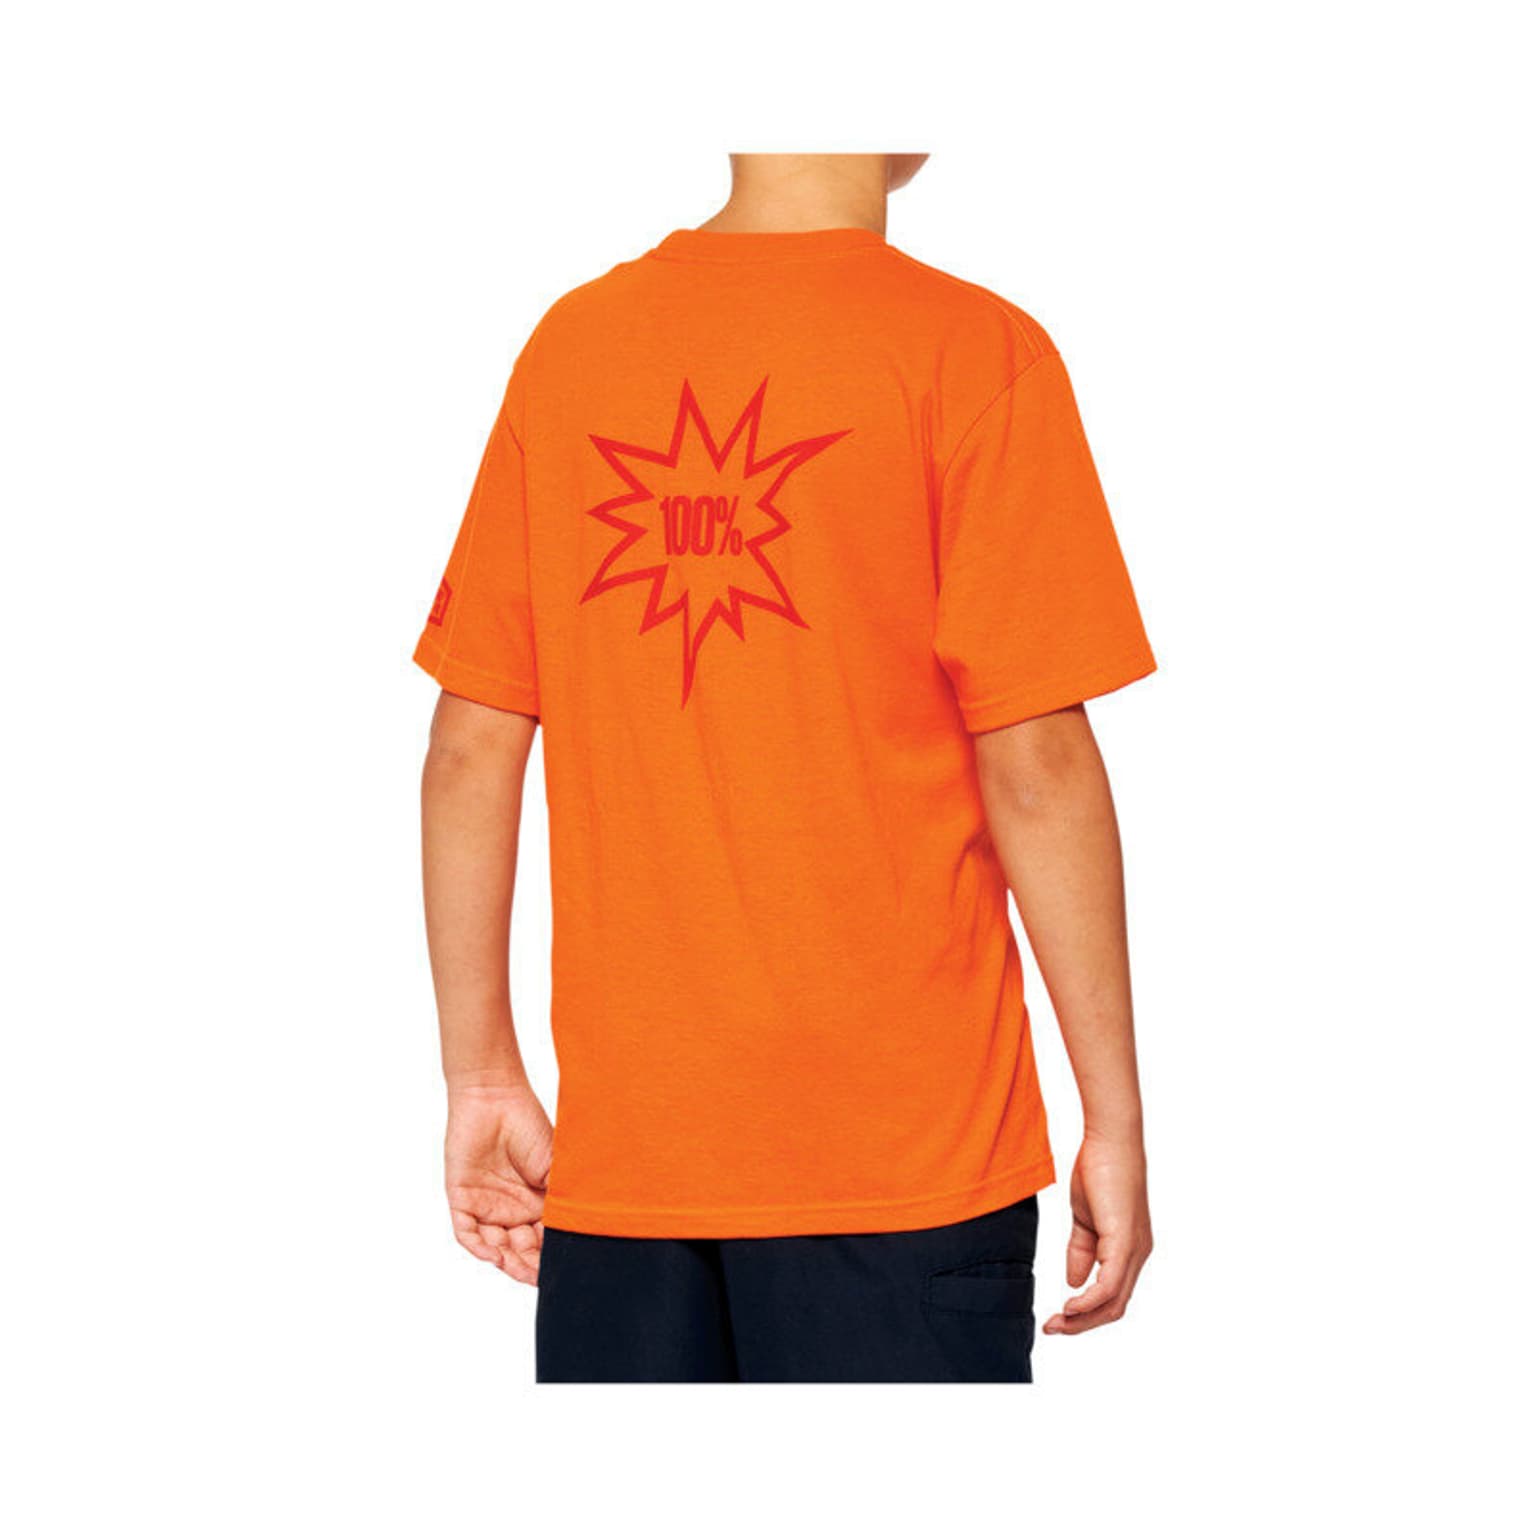 100% 100% Smash Youth T-Shirt orange 2